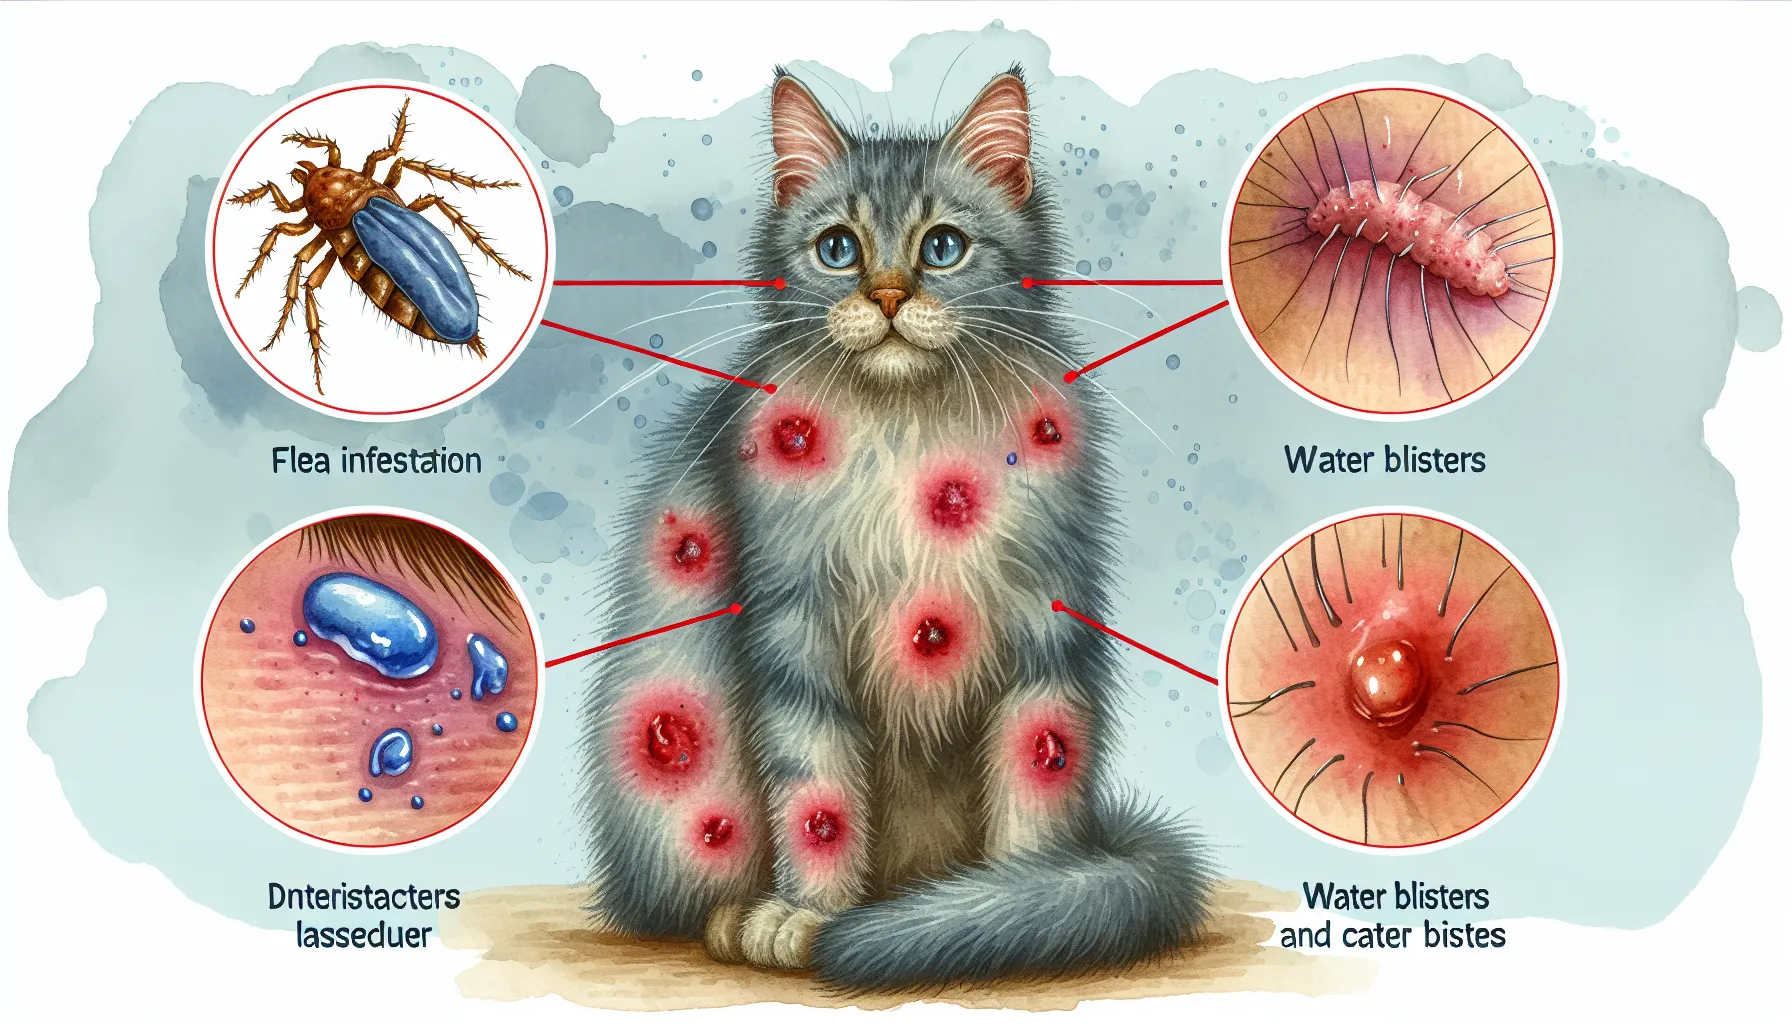 ## 2. 猫のノミ被害と水ぶくれの関連
のAIイメージ画像